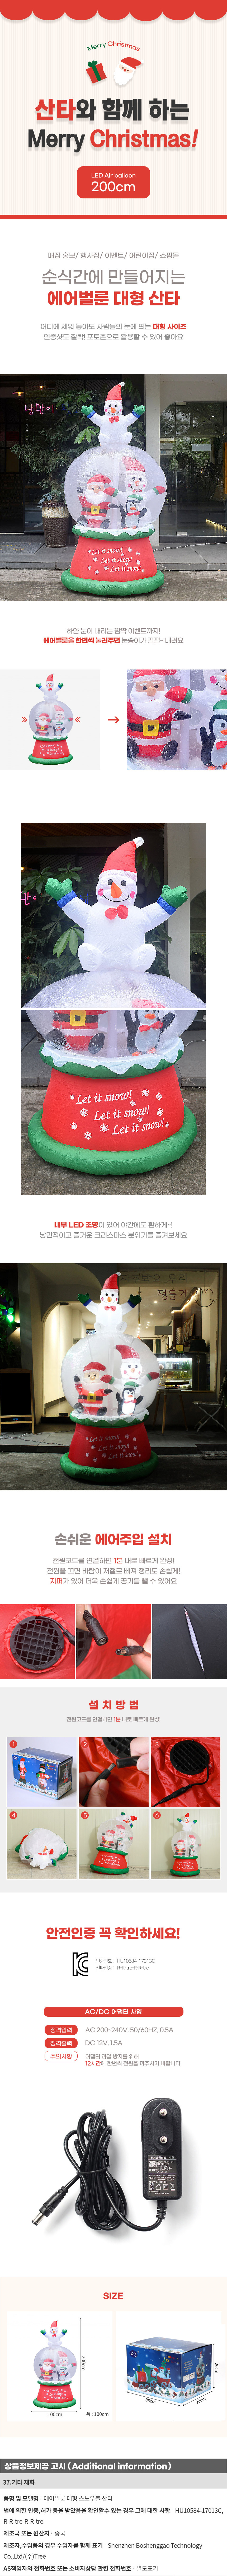 LED 대형 에어벌룬 산타 200cm 크리스마스 데코소품